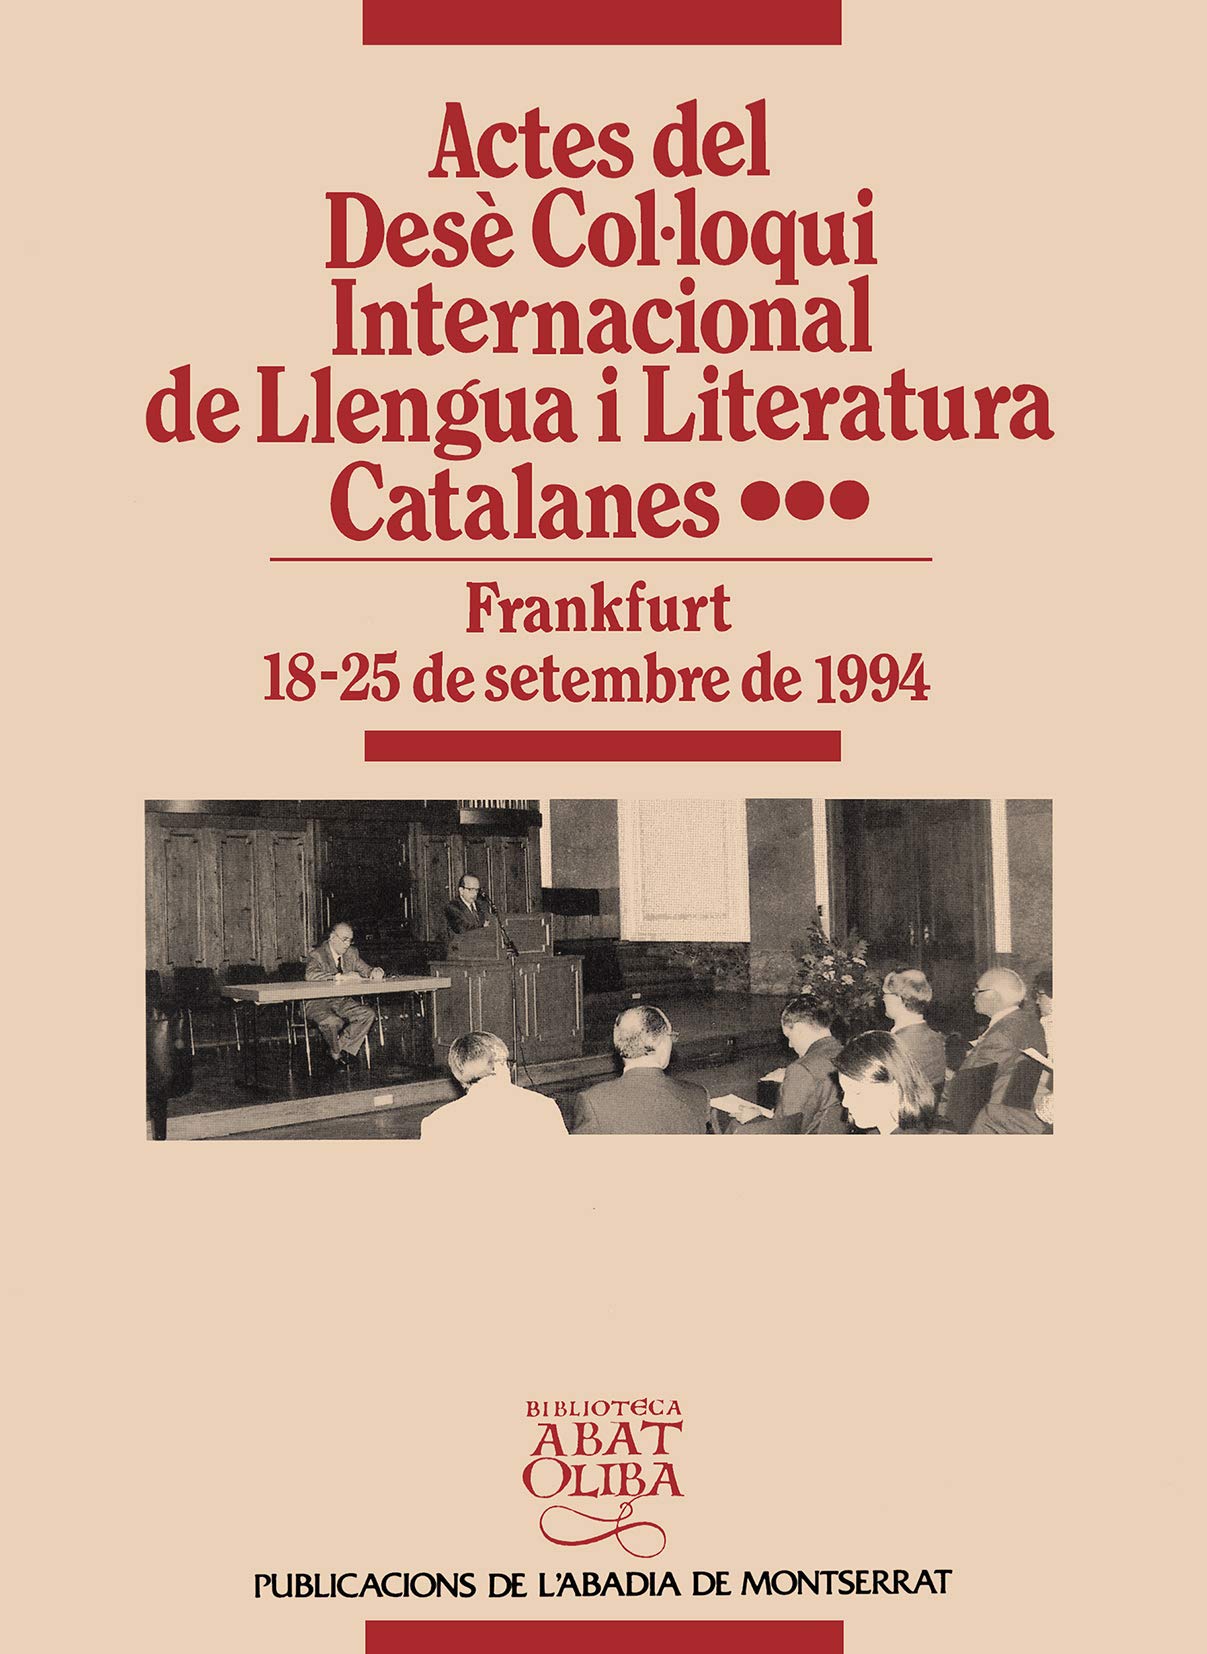 Imagen de portada del libro Actes del Desè Col.loqui International de Llengua i Literatura Catalanes, Frankfurt, 18-25 de setembre de 1994